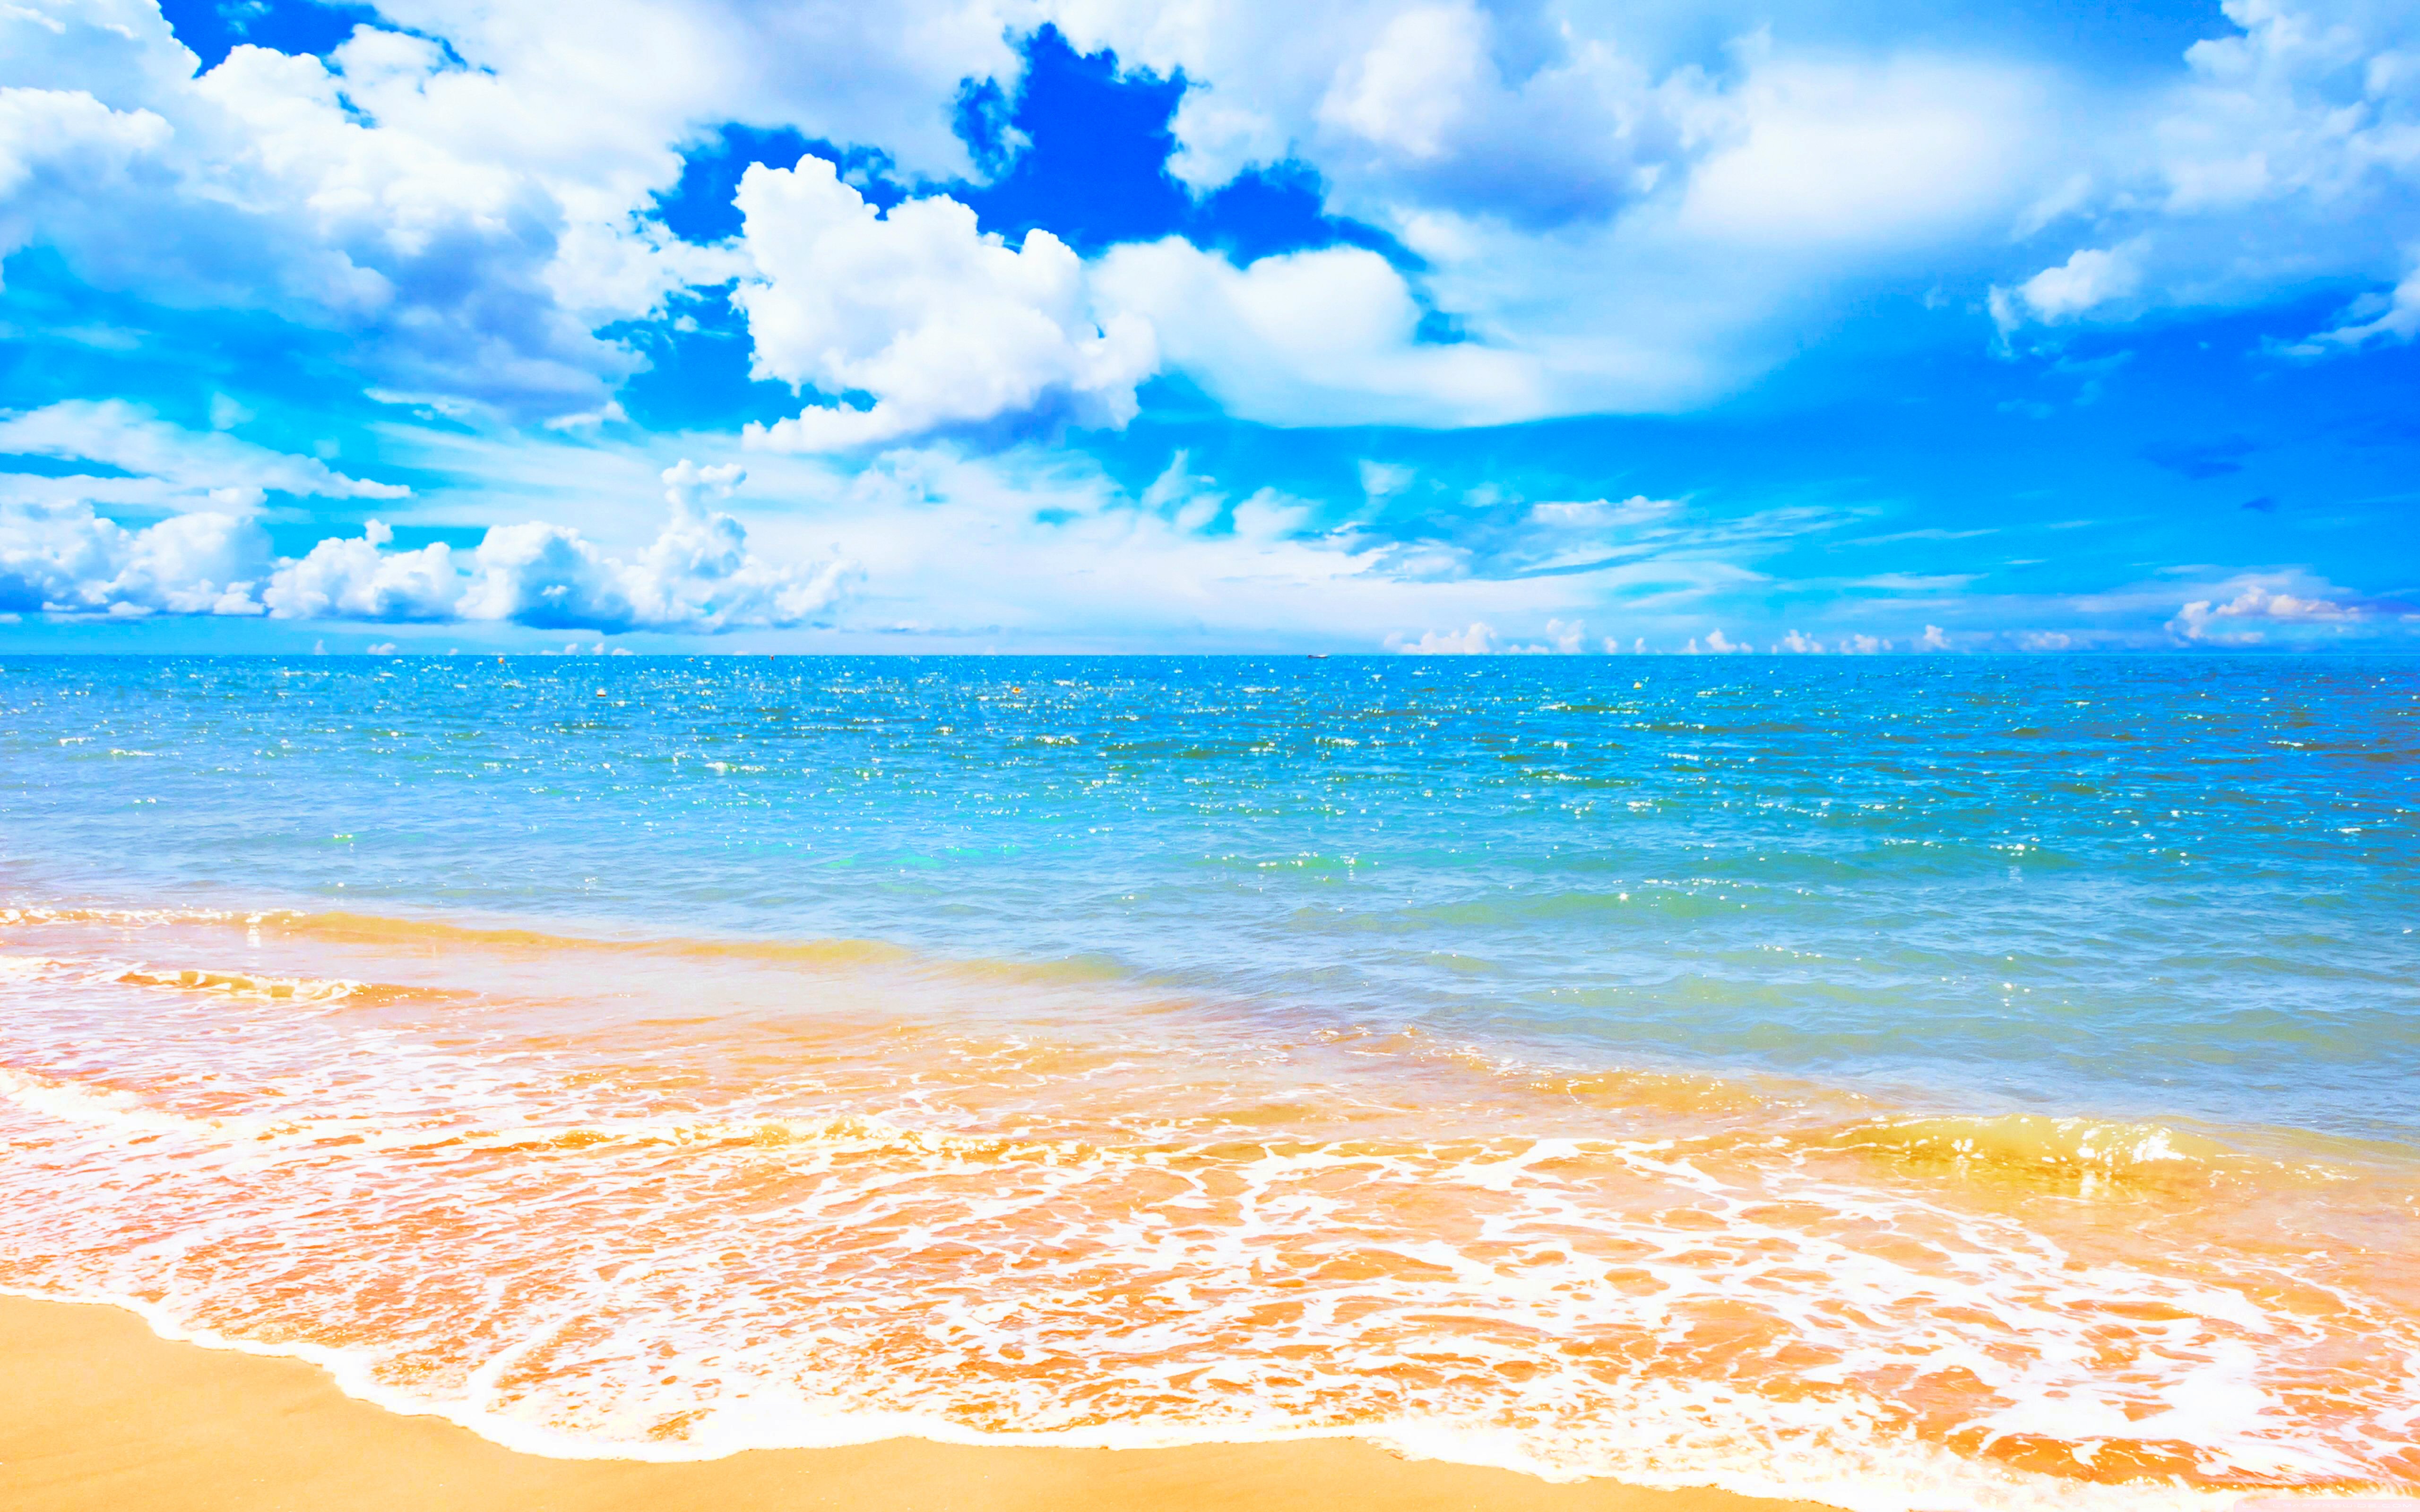 BEACH [18] glorious horizon [08may2015friday] [164359] [VersionOne